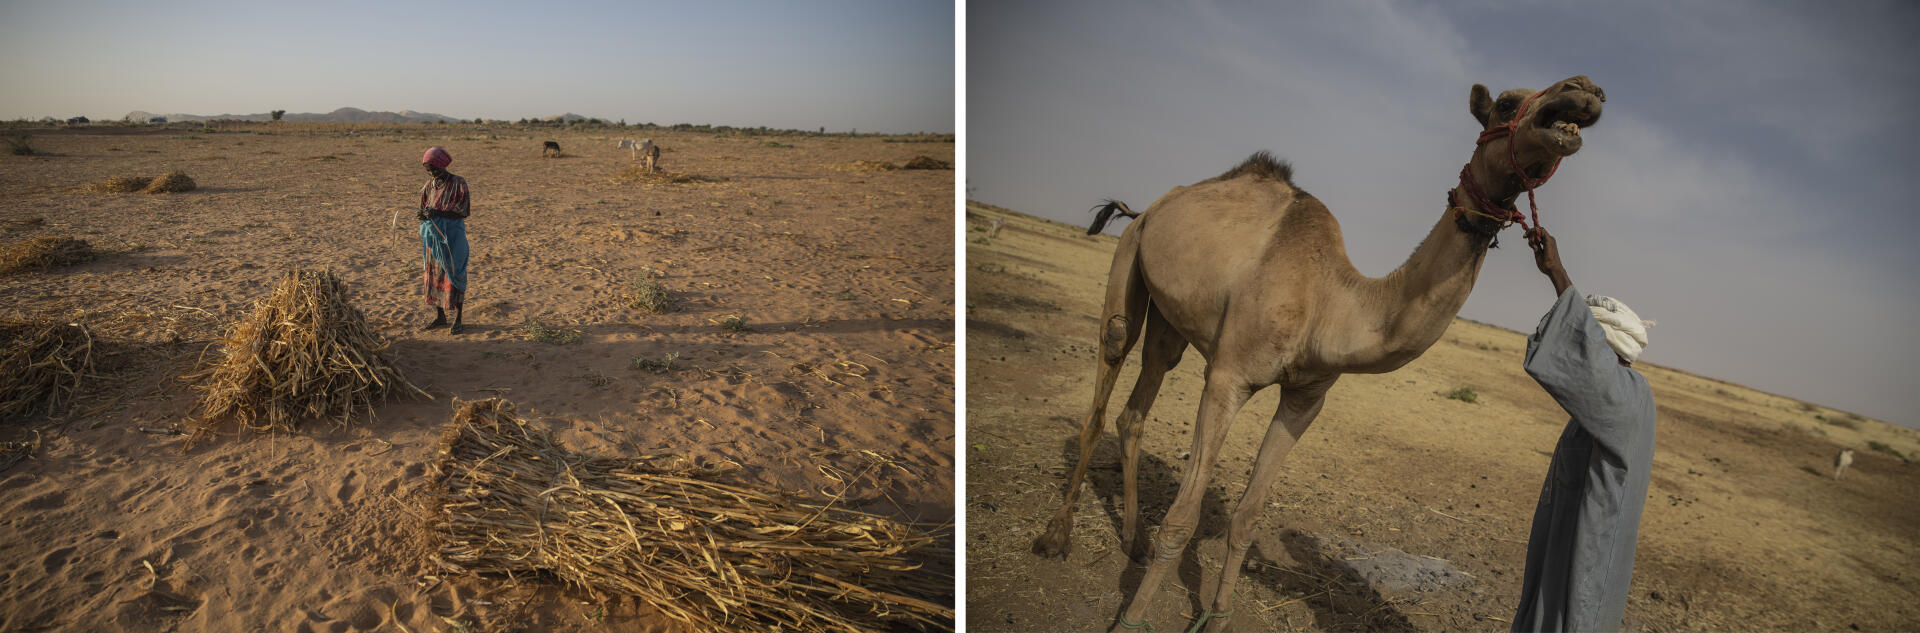 Une femme collecte des branchages pour construire des clôtures. Par précaution, elle ne s’éloigne pas. A droite, un nomade arabe avec son dromadaire.